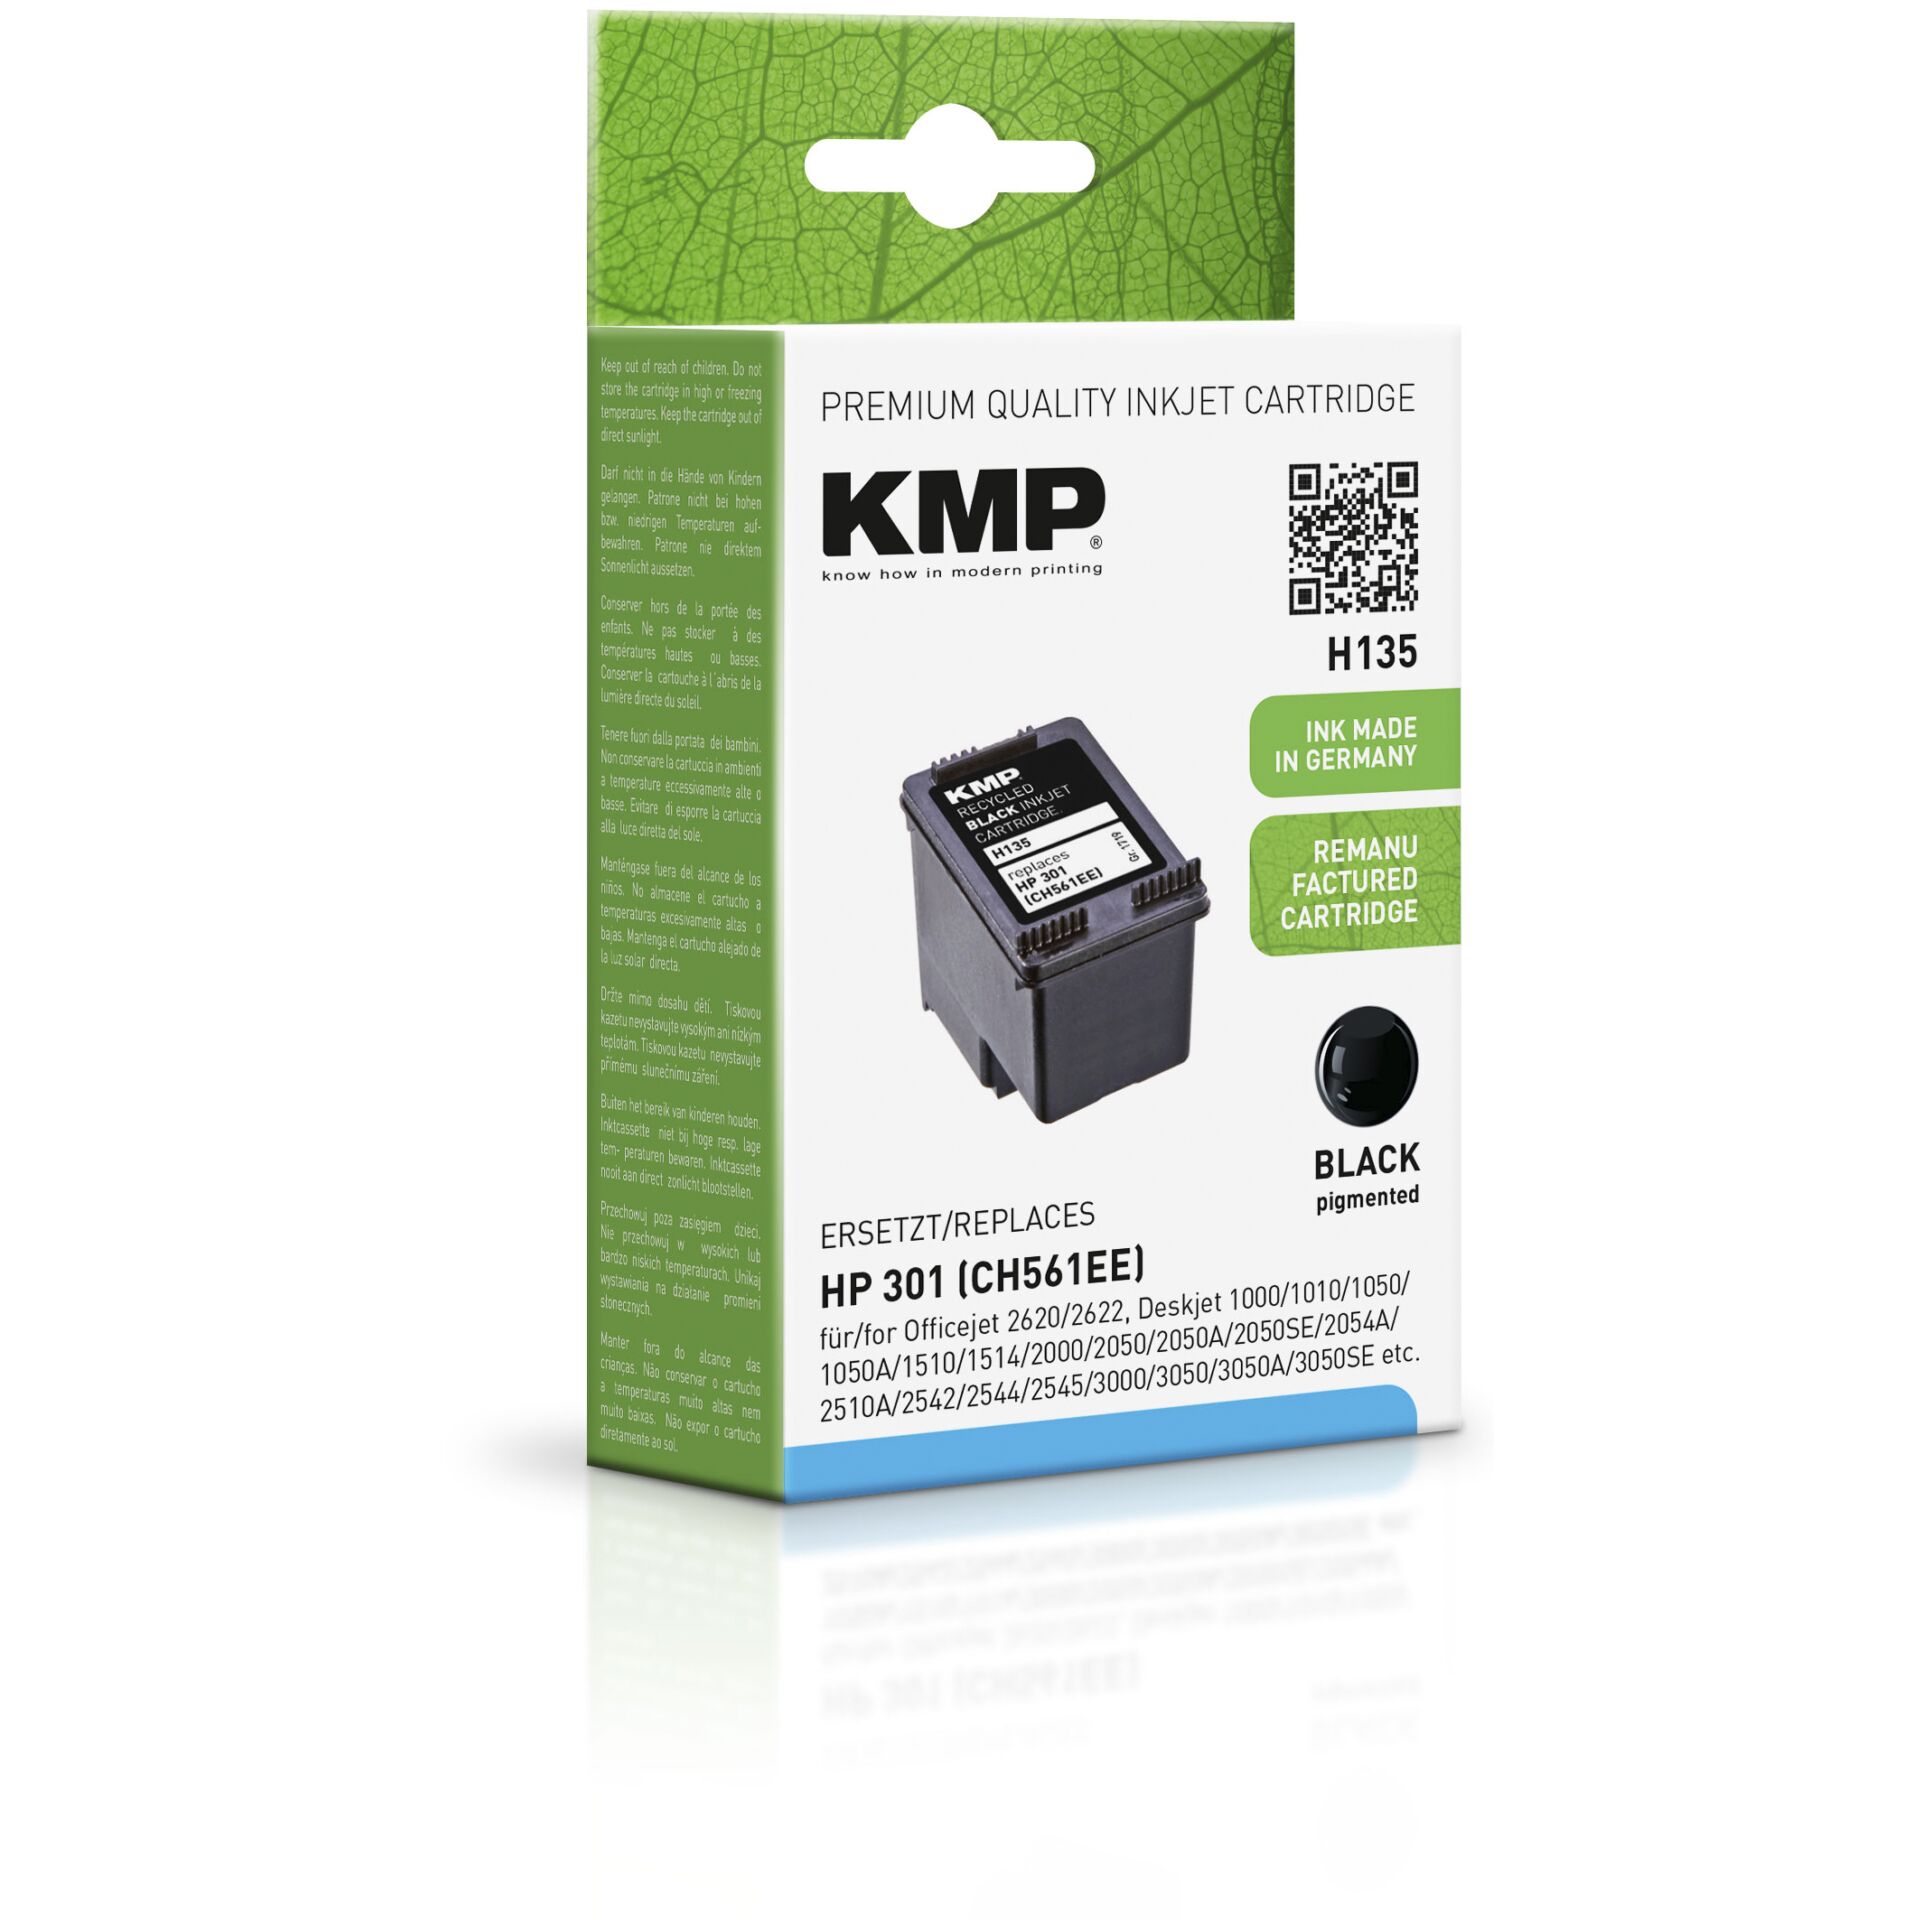 Kmp Printtechnik Ag -KMP 190 refilled Hardware/Electronic CH561EE NR.301 Patrone black Ag -Kmp Printtechnik S. HP H135